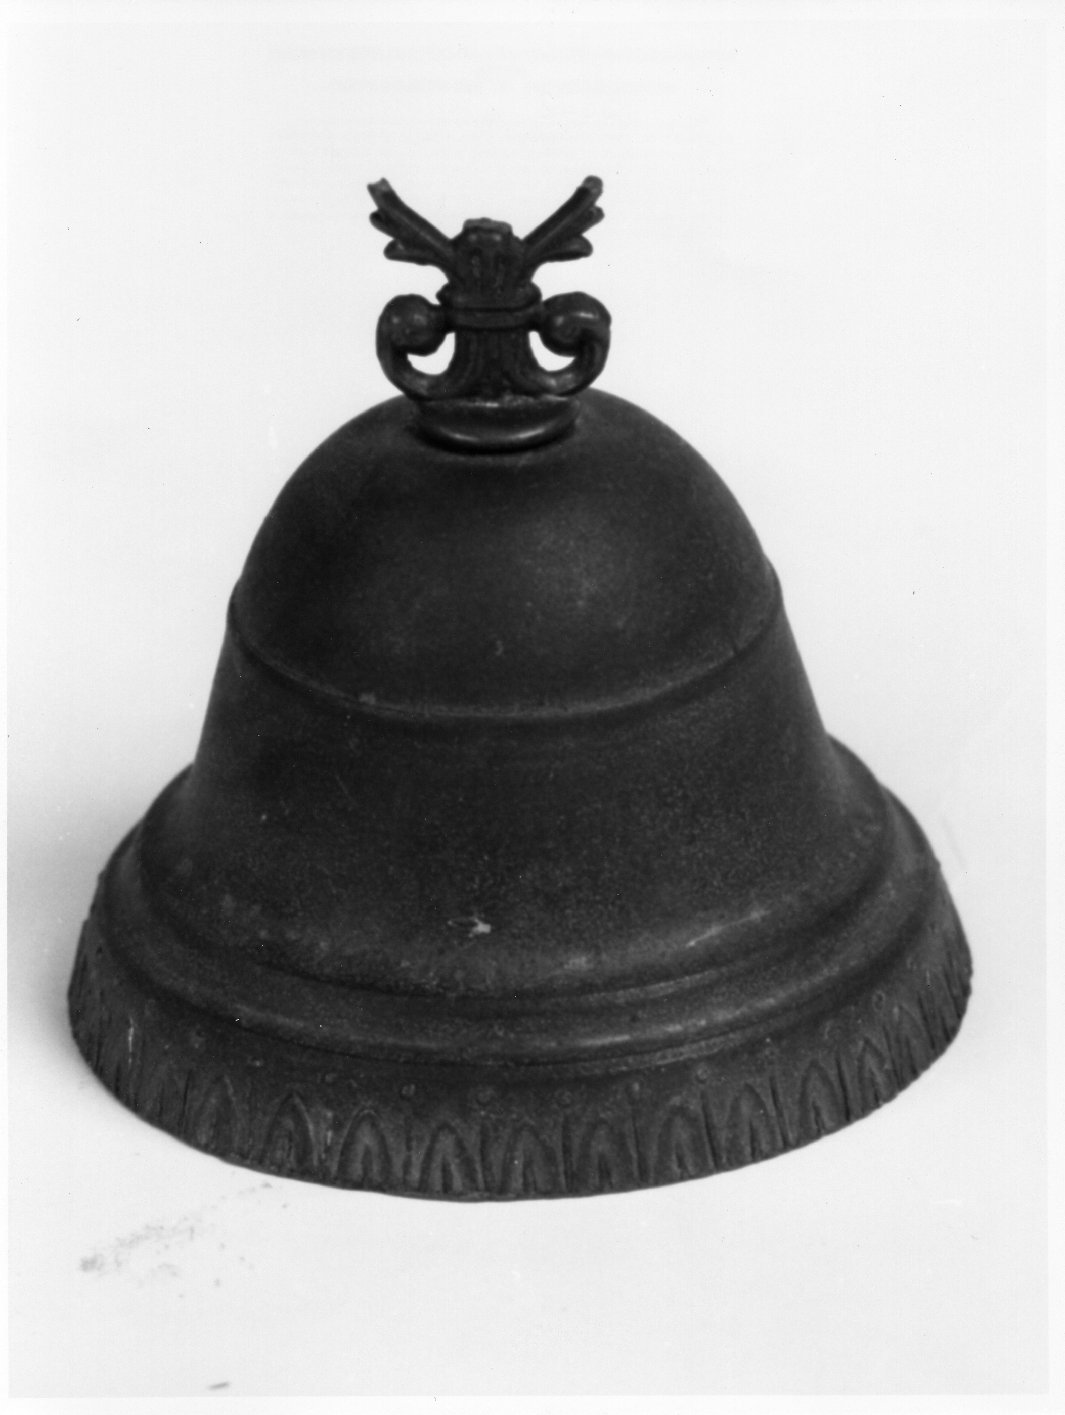 campanello d'altare - bottega toscana (secc. XVIII/ XIX)